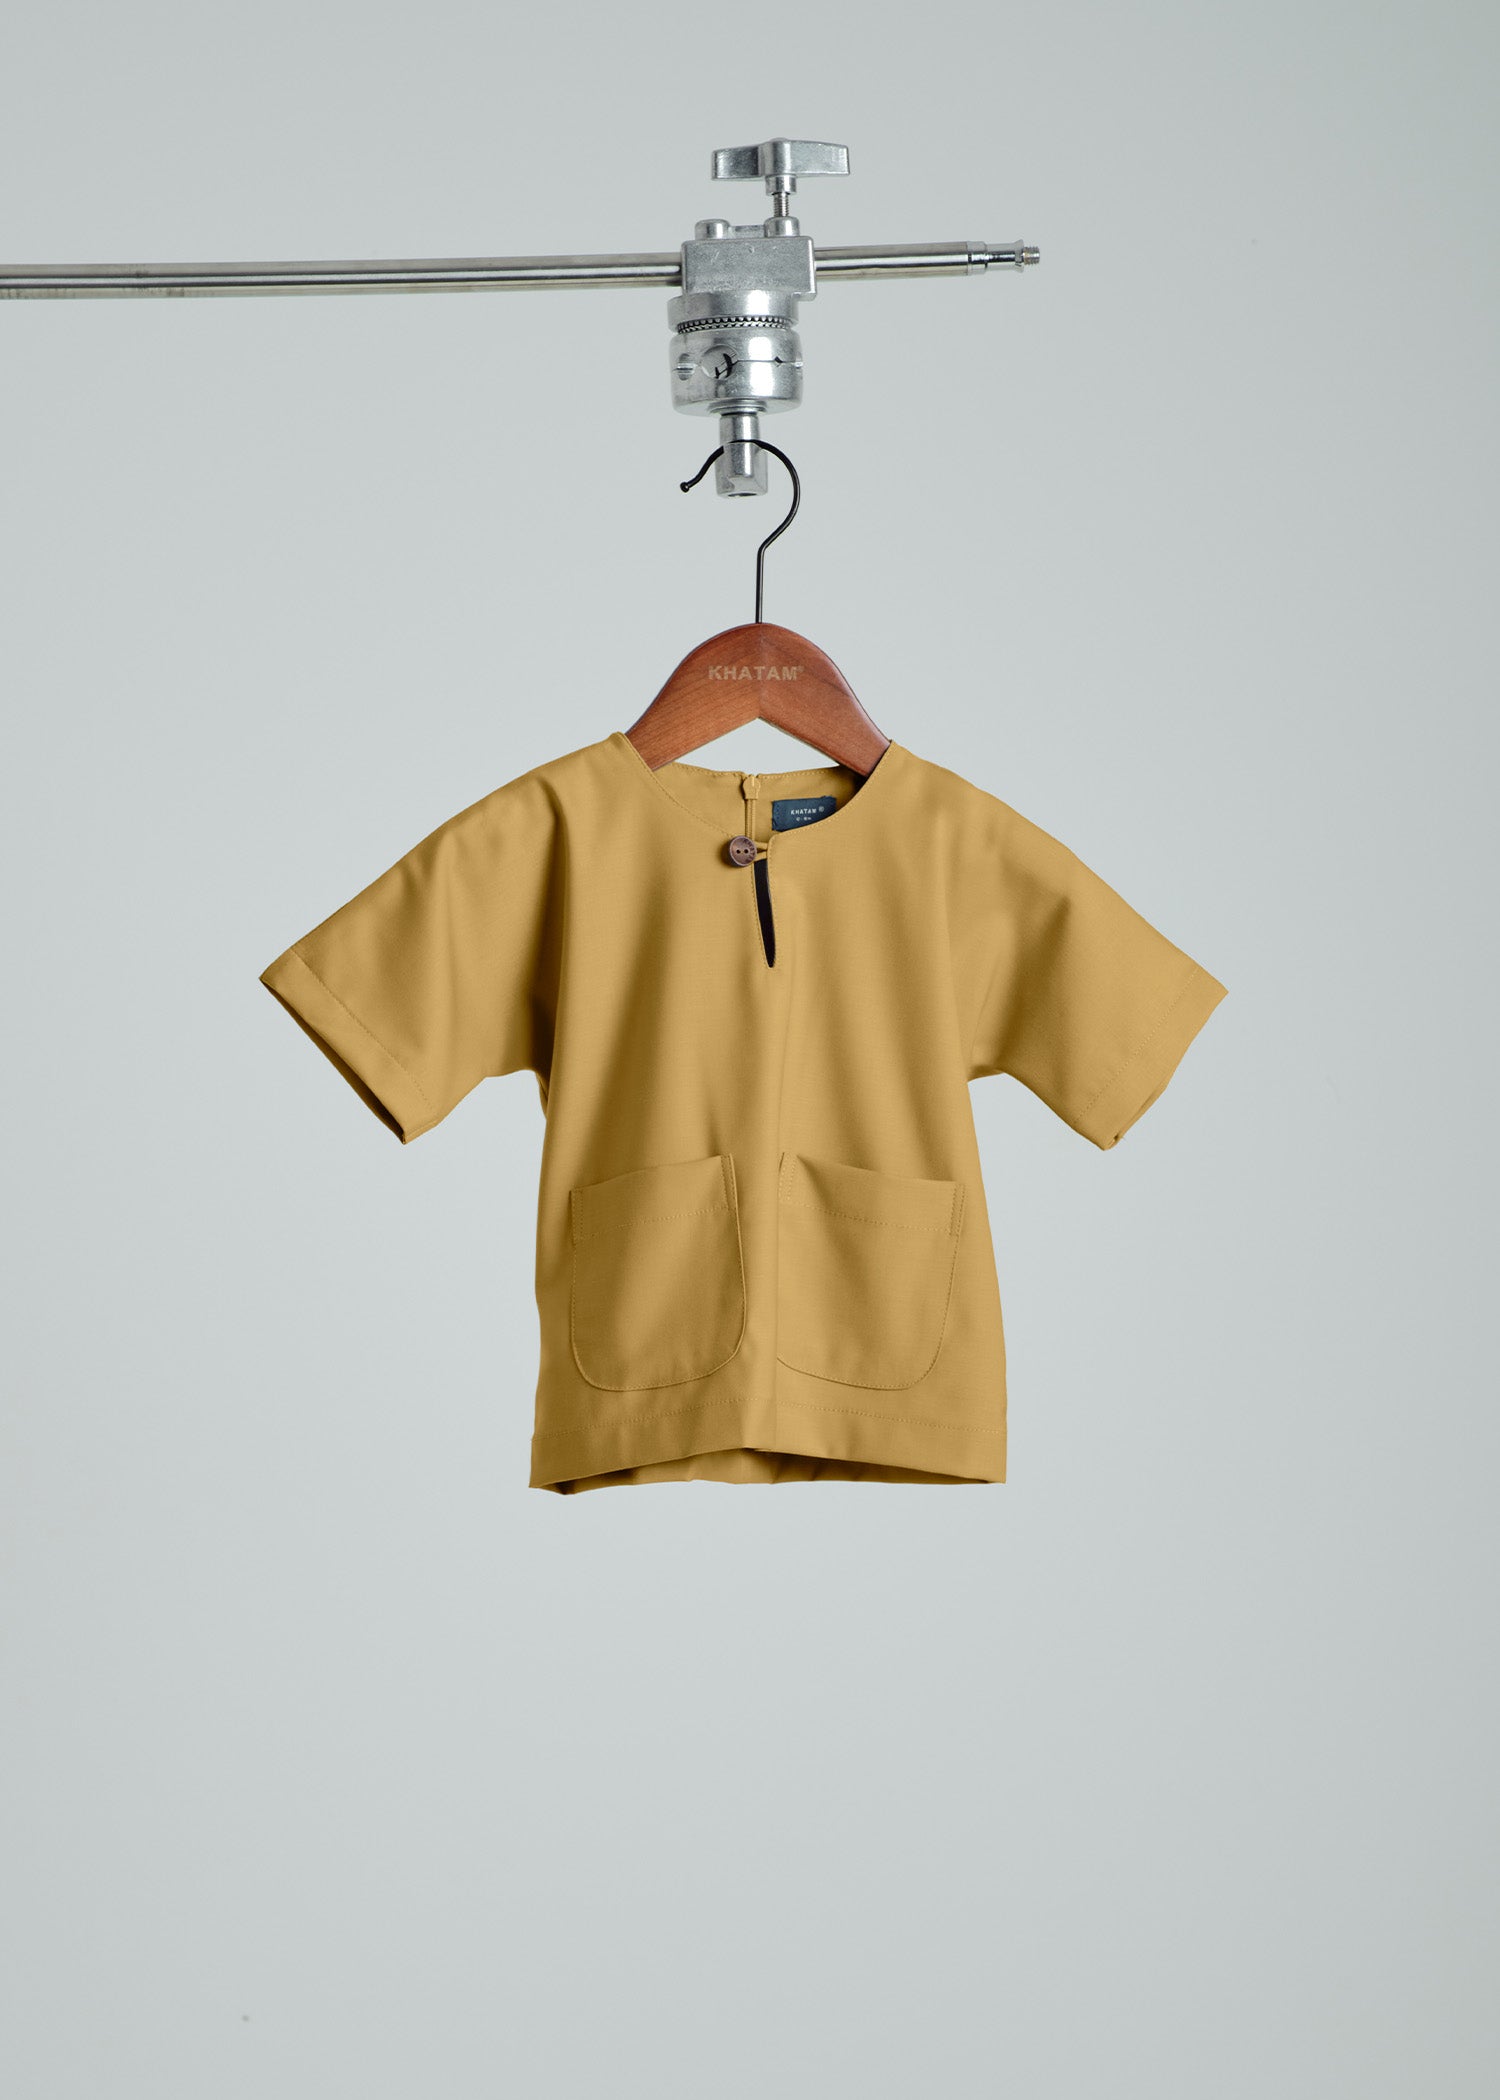 Patawali Baby Boys Baju Melayu Teluk Belanga - Mustard Brown